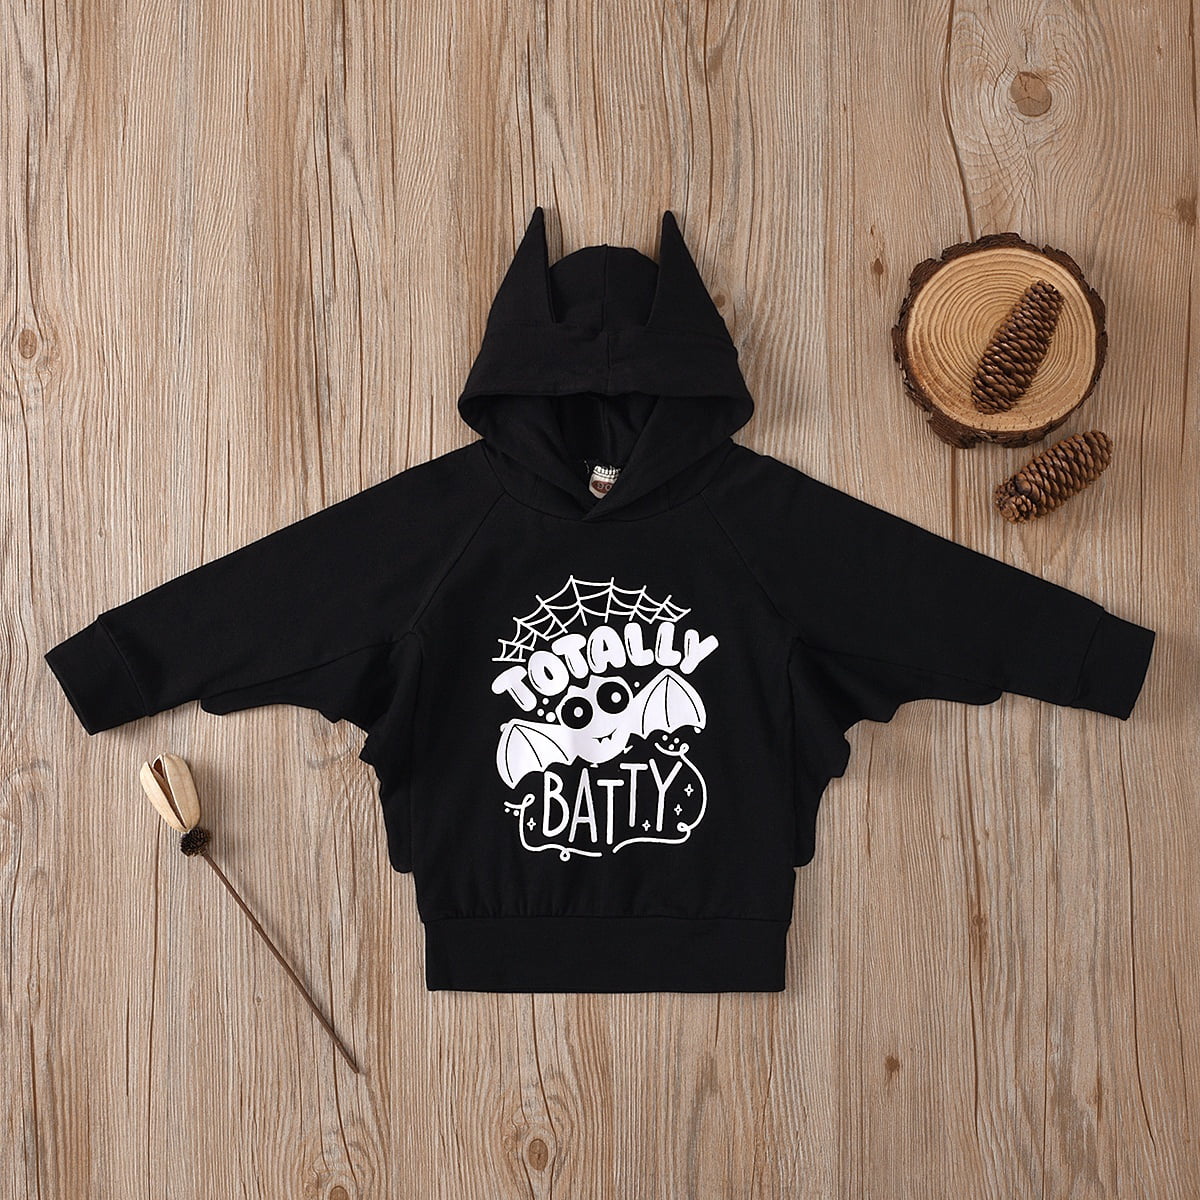 Kleding Unisex kinderkleding Unisex babykleding Hoodies & Sweatshirts bat cute bat hoodie cute hoodie Cute Bat Halloween Hoodie kid's Halloween kid's hoodie 